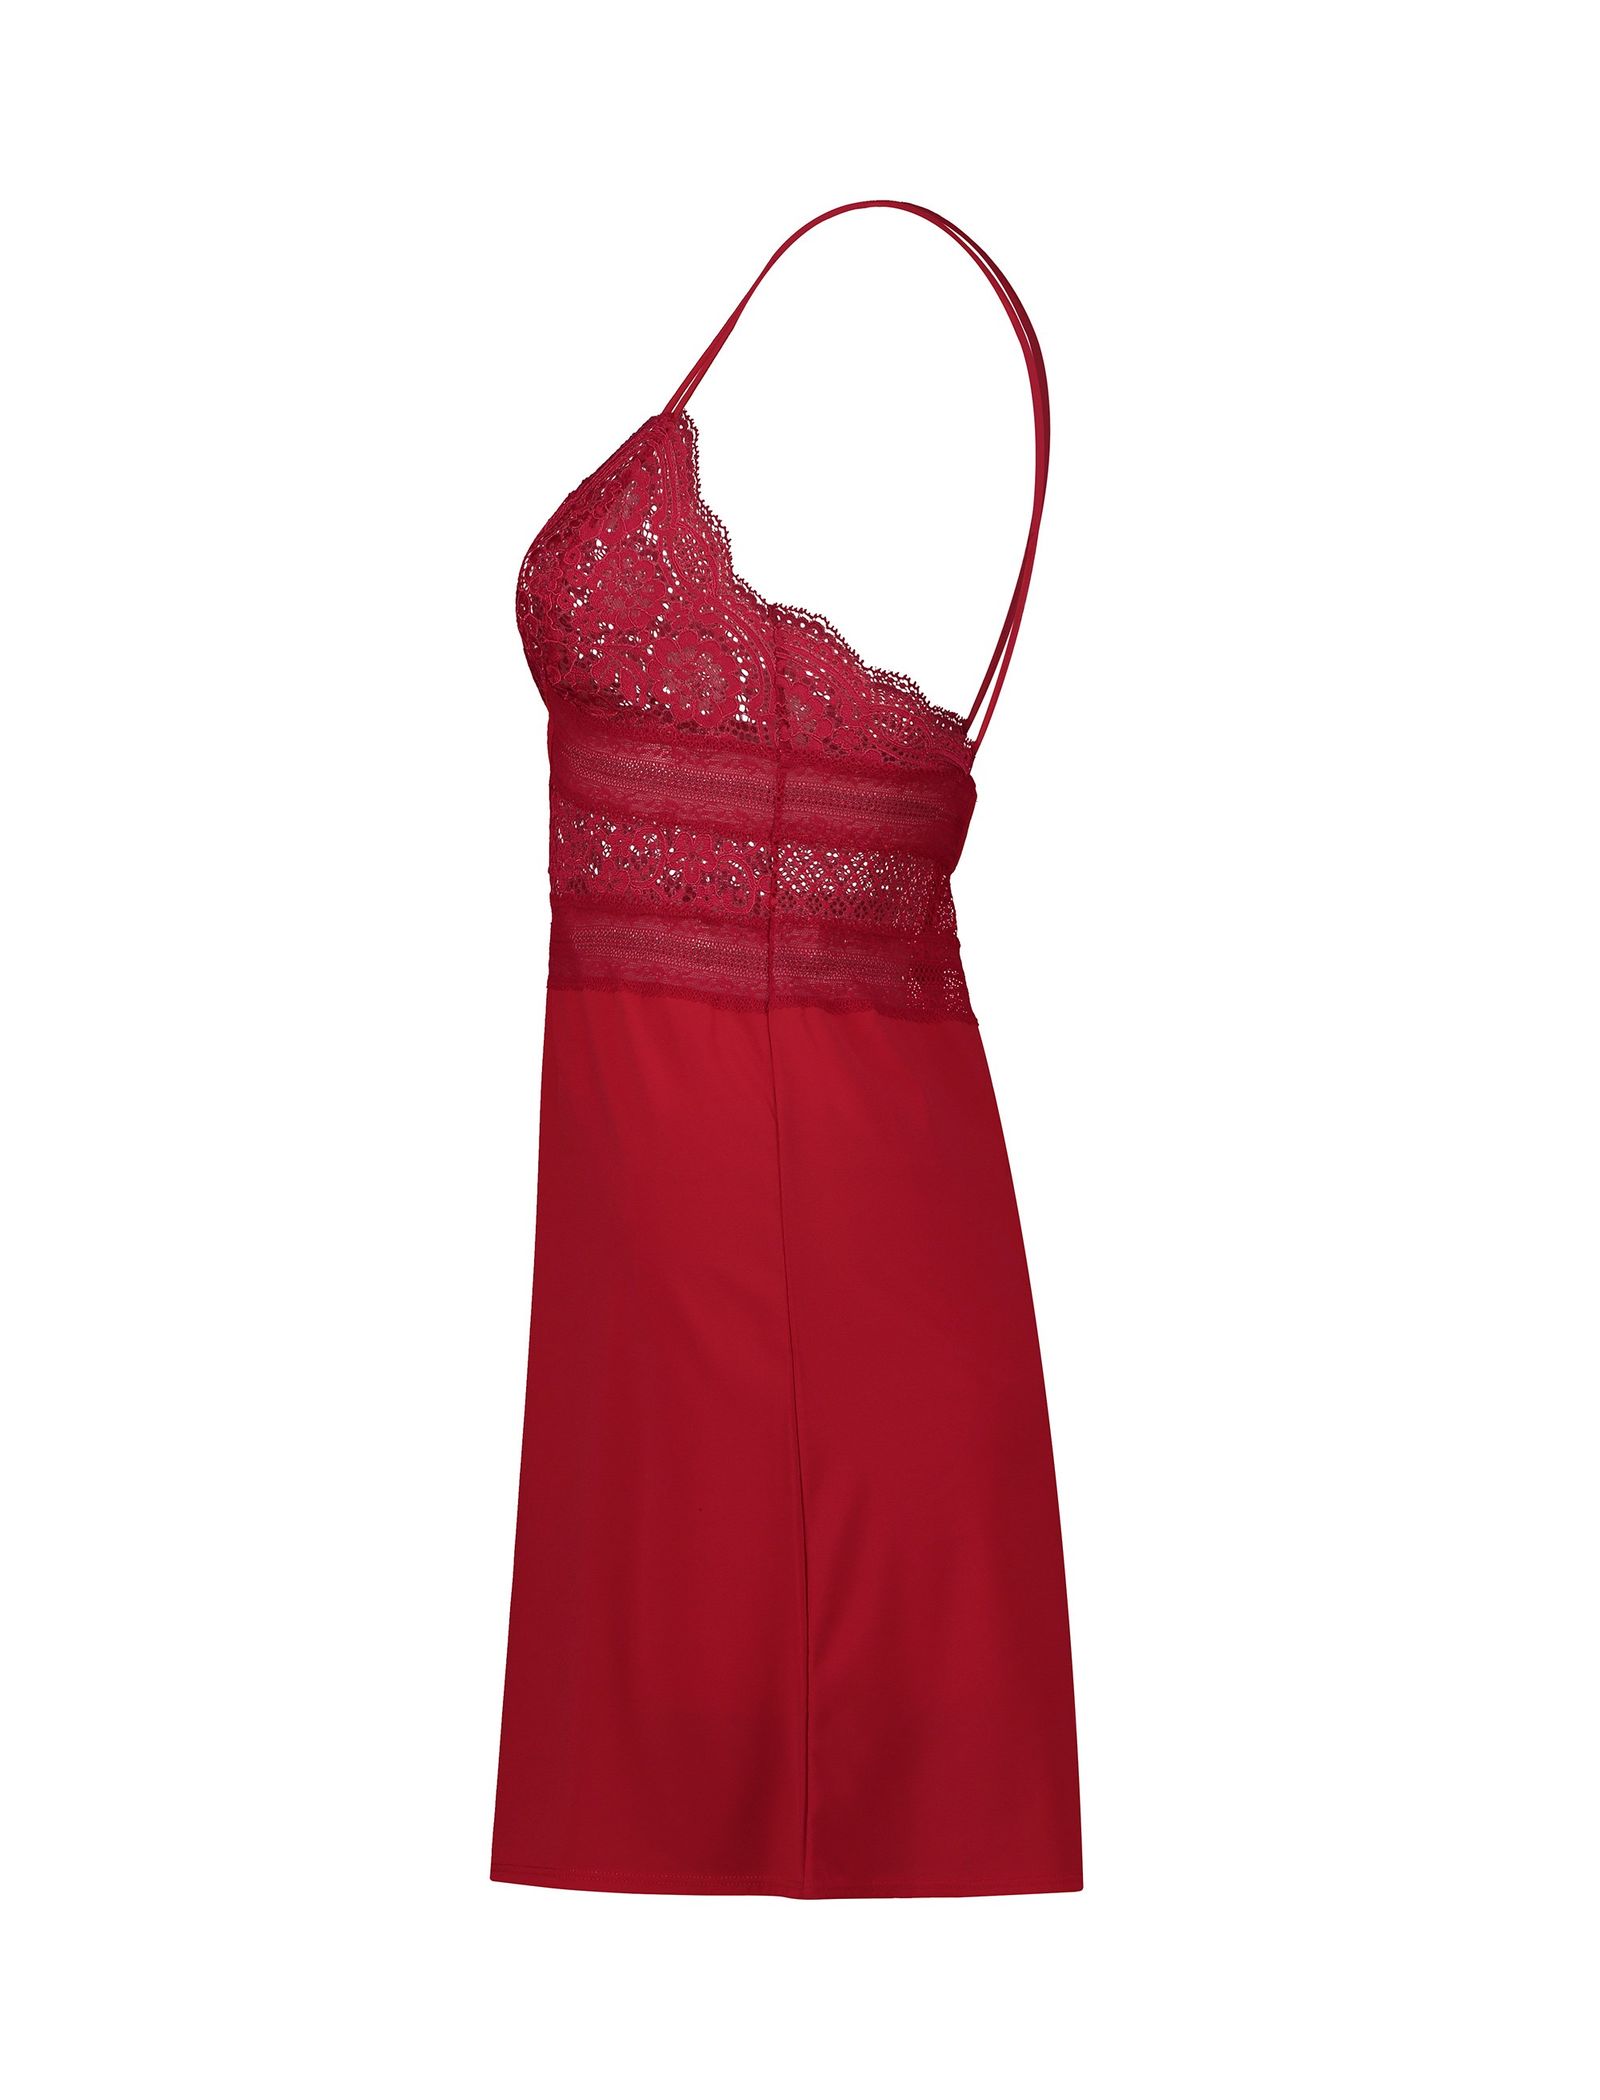 لباس خواب یک تکه زنانه - اتام - قرمز - 4